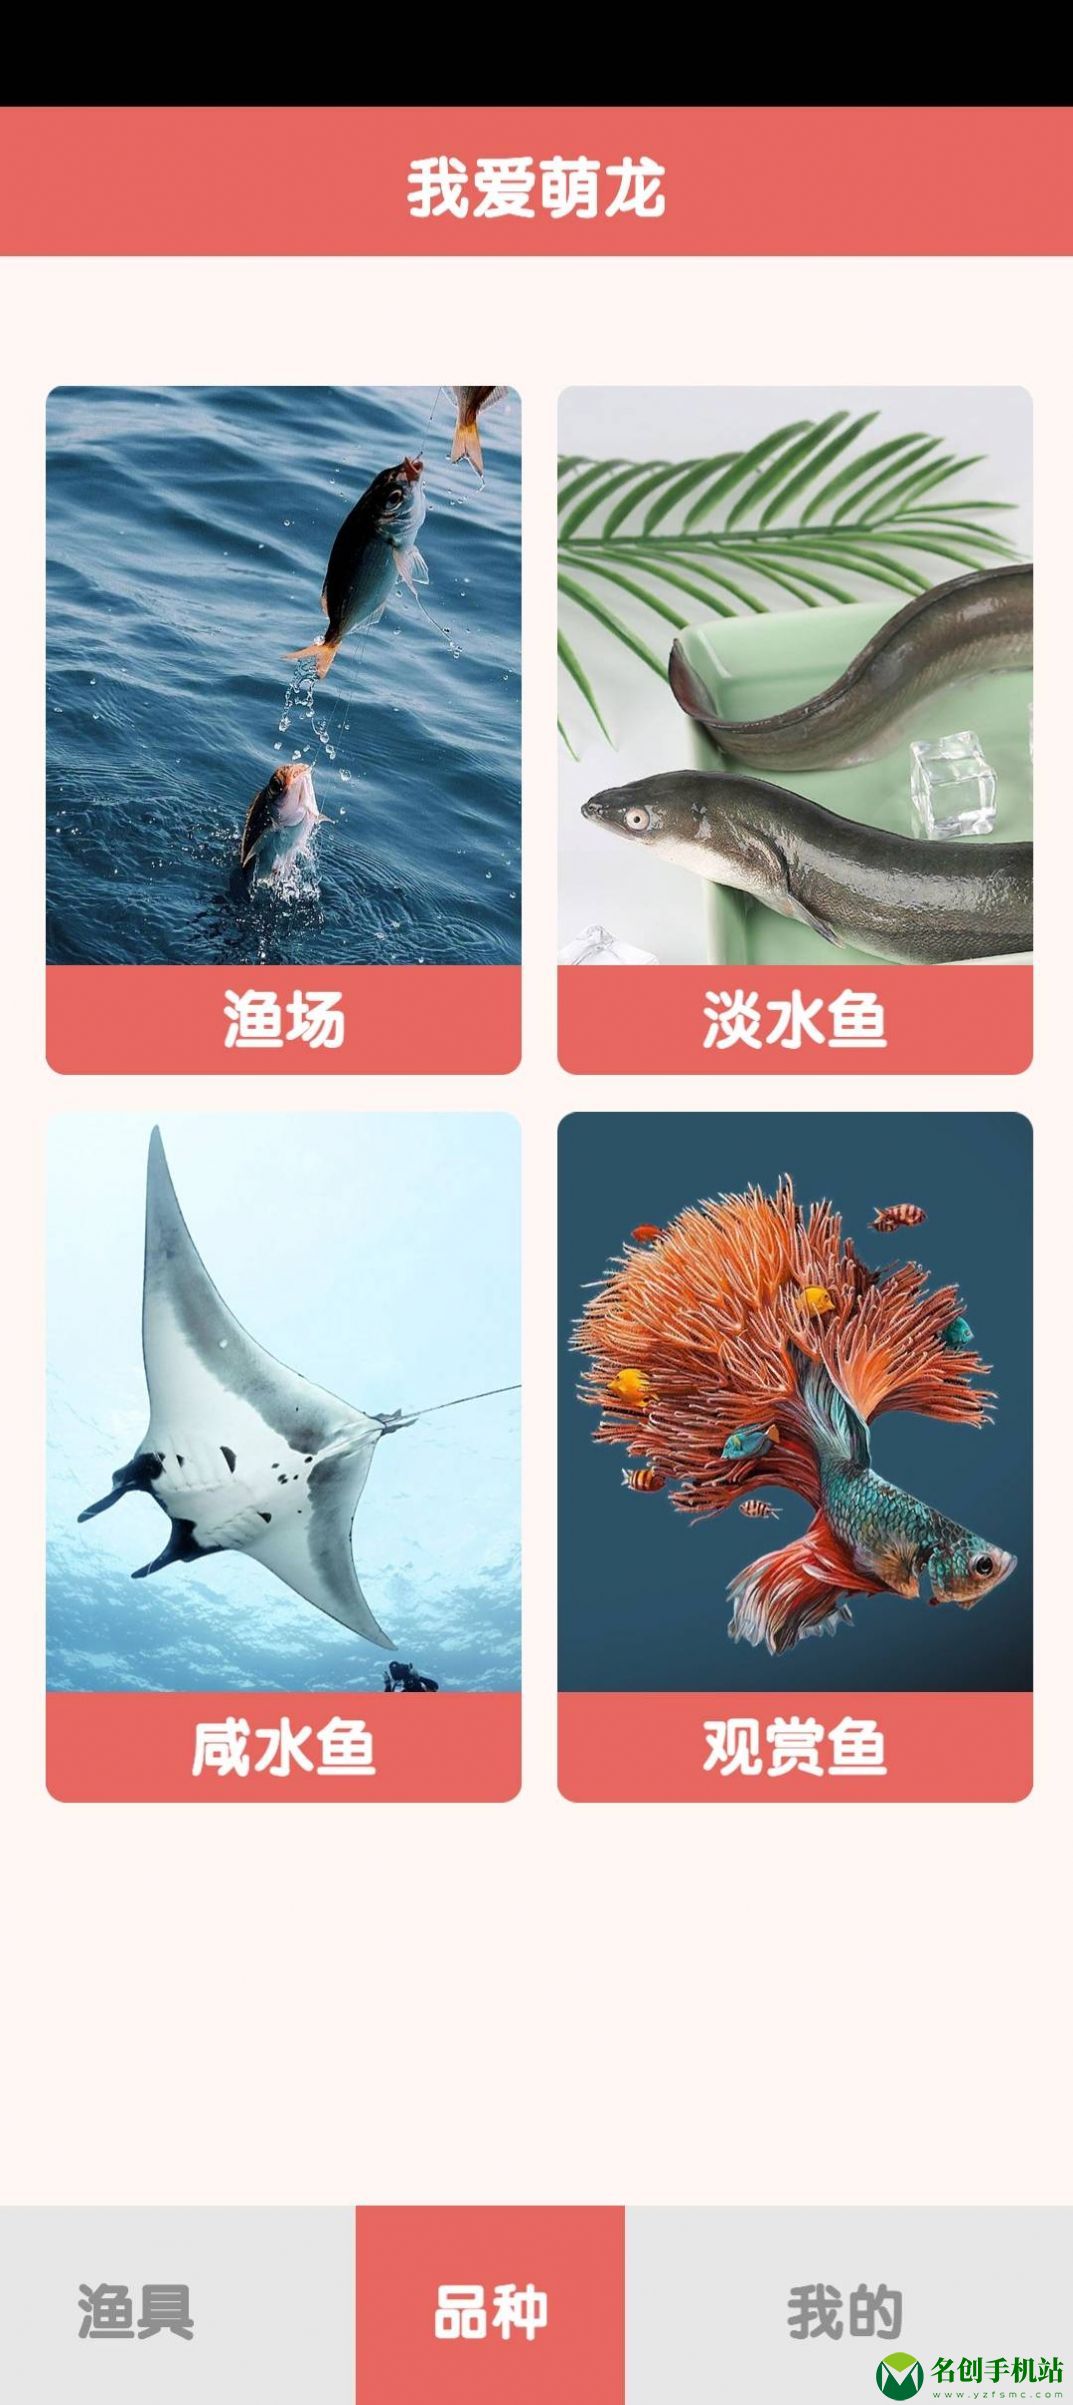 萌龙乐园海洋鱼类百科